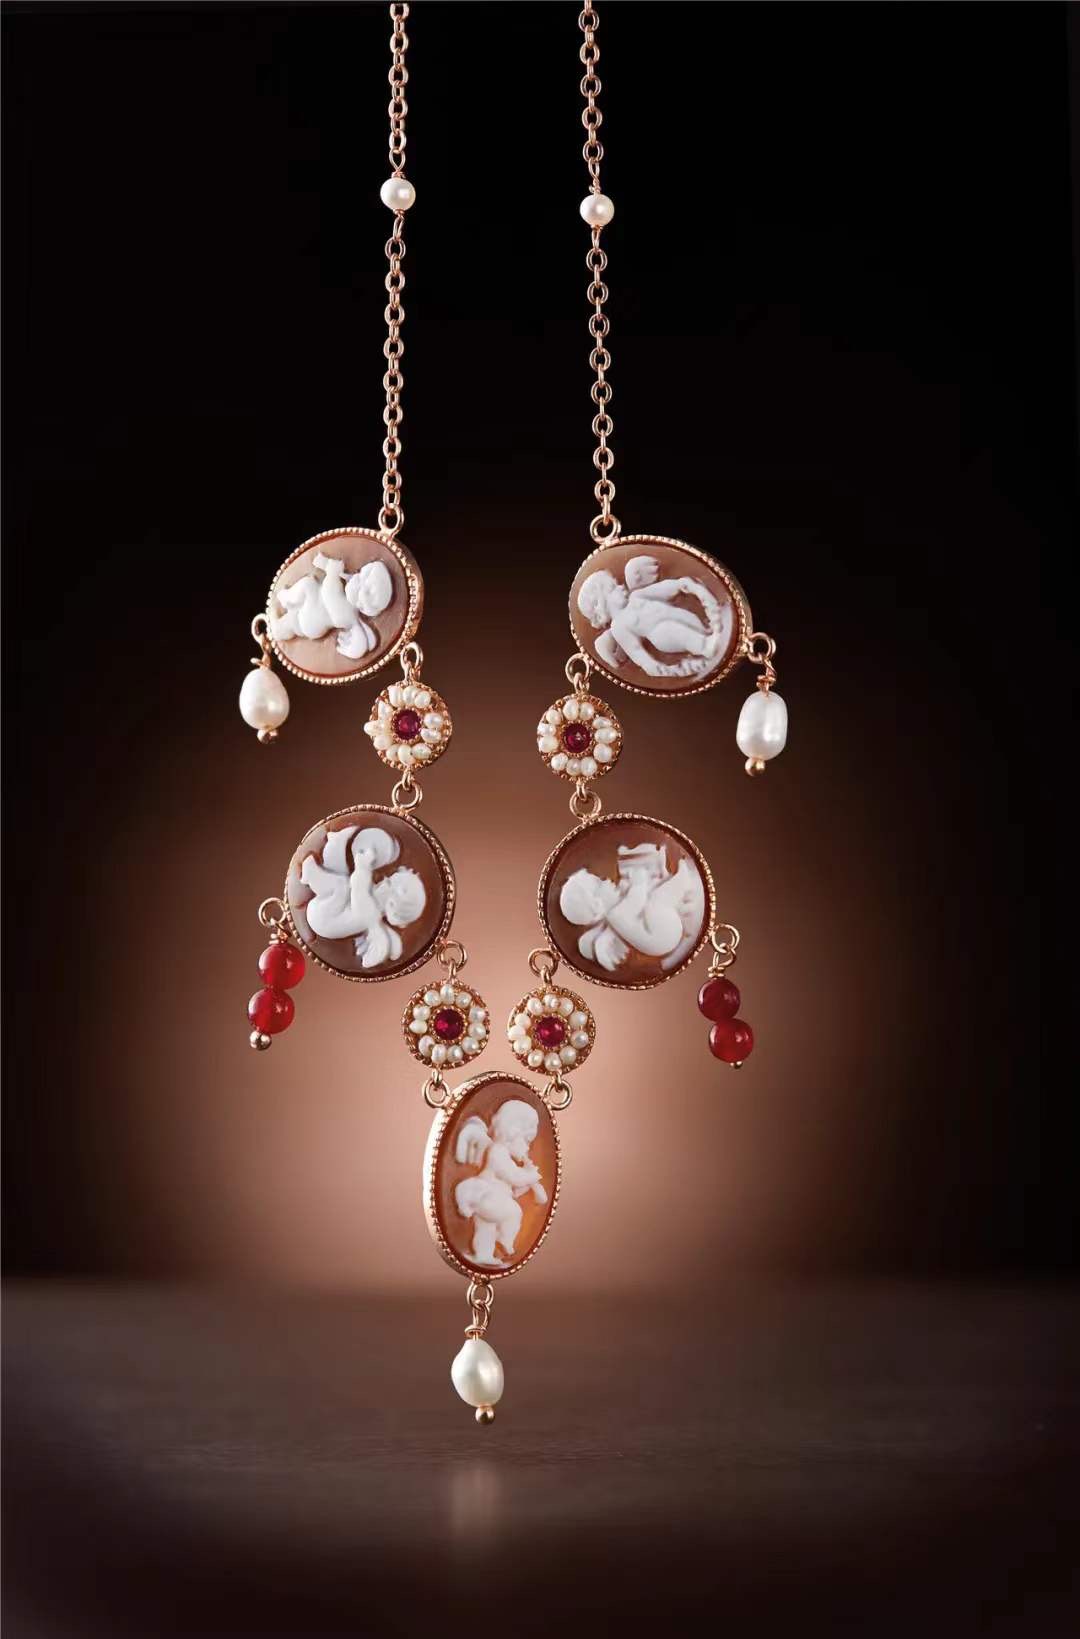 CAMEO ITALIANO 用手工贝雕、镶嵌珠宝制作的项链。本文图片均为受访者供图